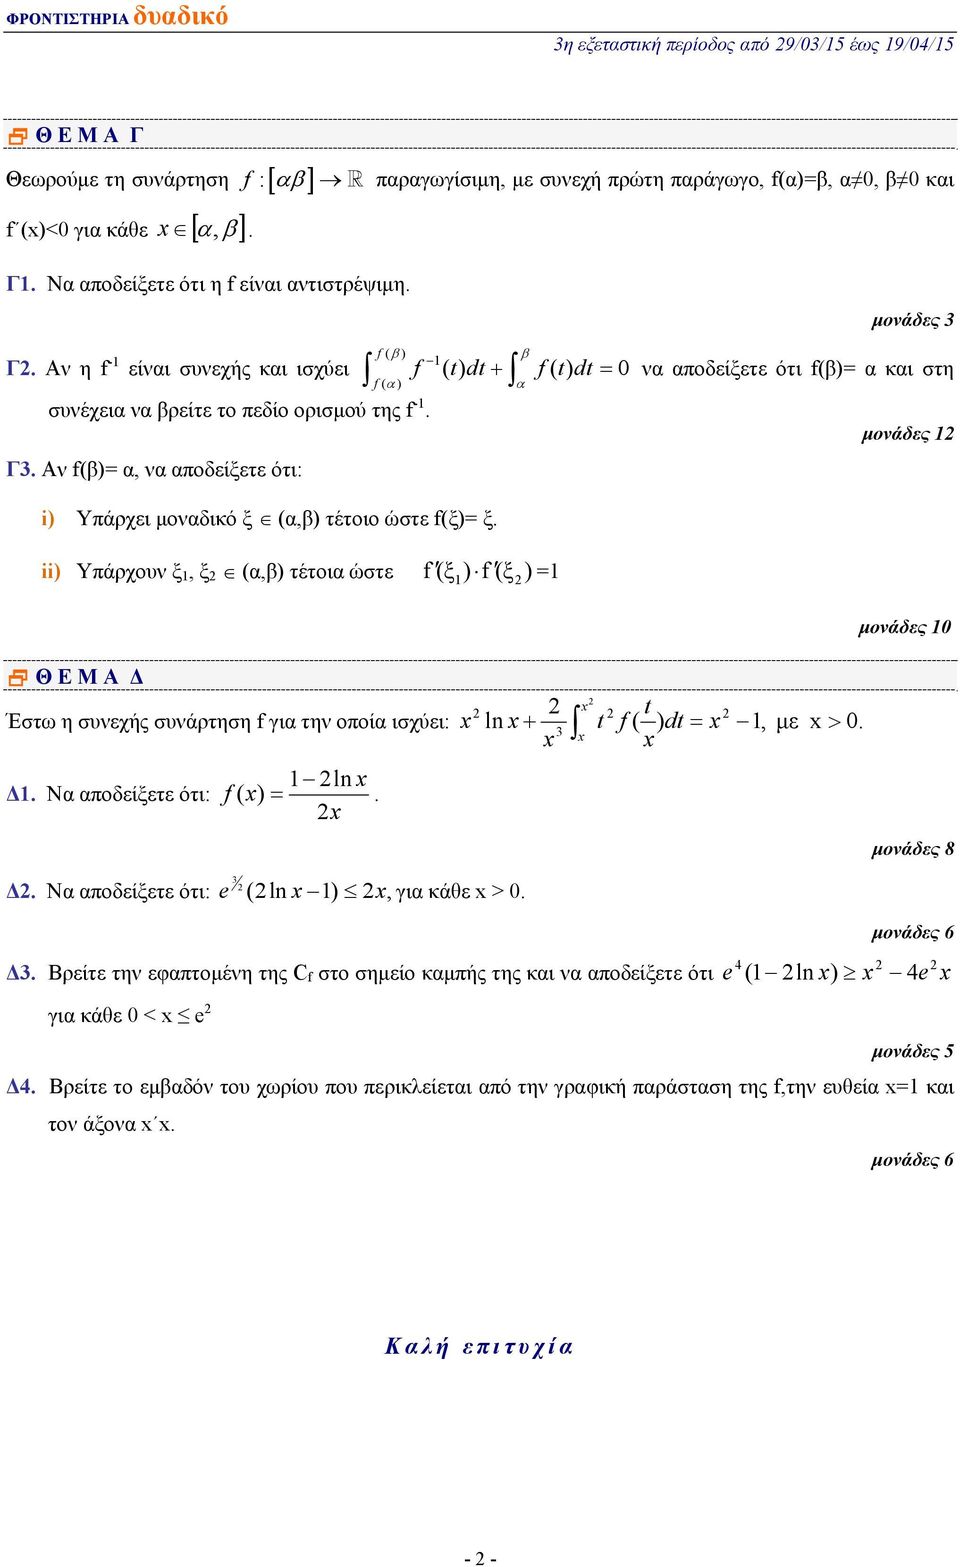 Αν f(), ν ποδείξετε ότι: i) Υπάρχει μονδικό ξ (,) τέτοιο ώστε f(ξ) ξ. ii) Υπάρχουν ξ, ξ (,) τέτοι ώστε f(ξ ) f(ξ ) μονάδες 0 Θ Ε Μ Α Δ Έστω η συνεχής συνάρτηση f γι την οποί ισχύει: ln + ( ), με > 0.